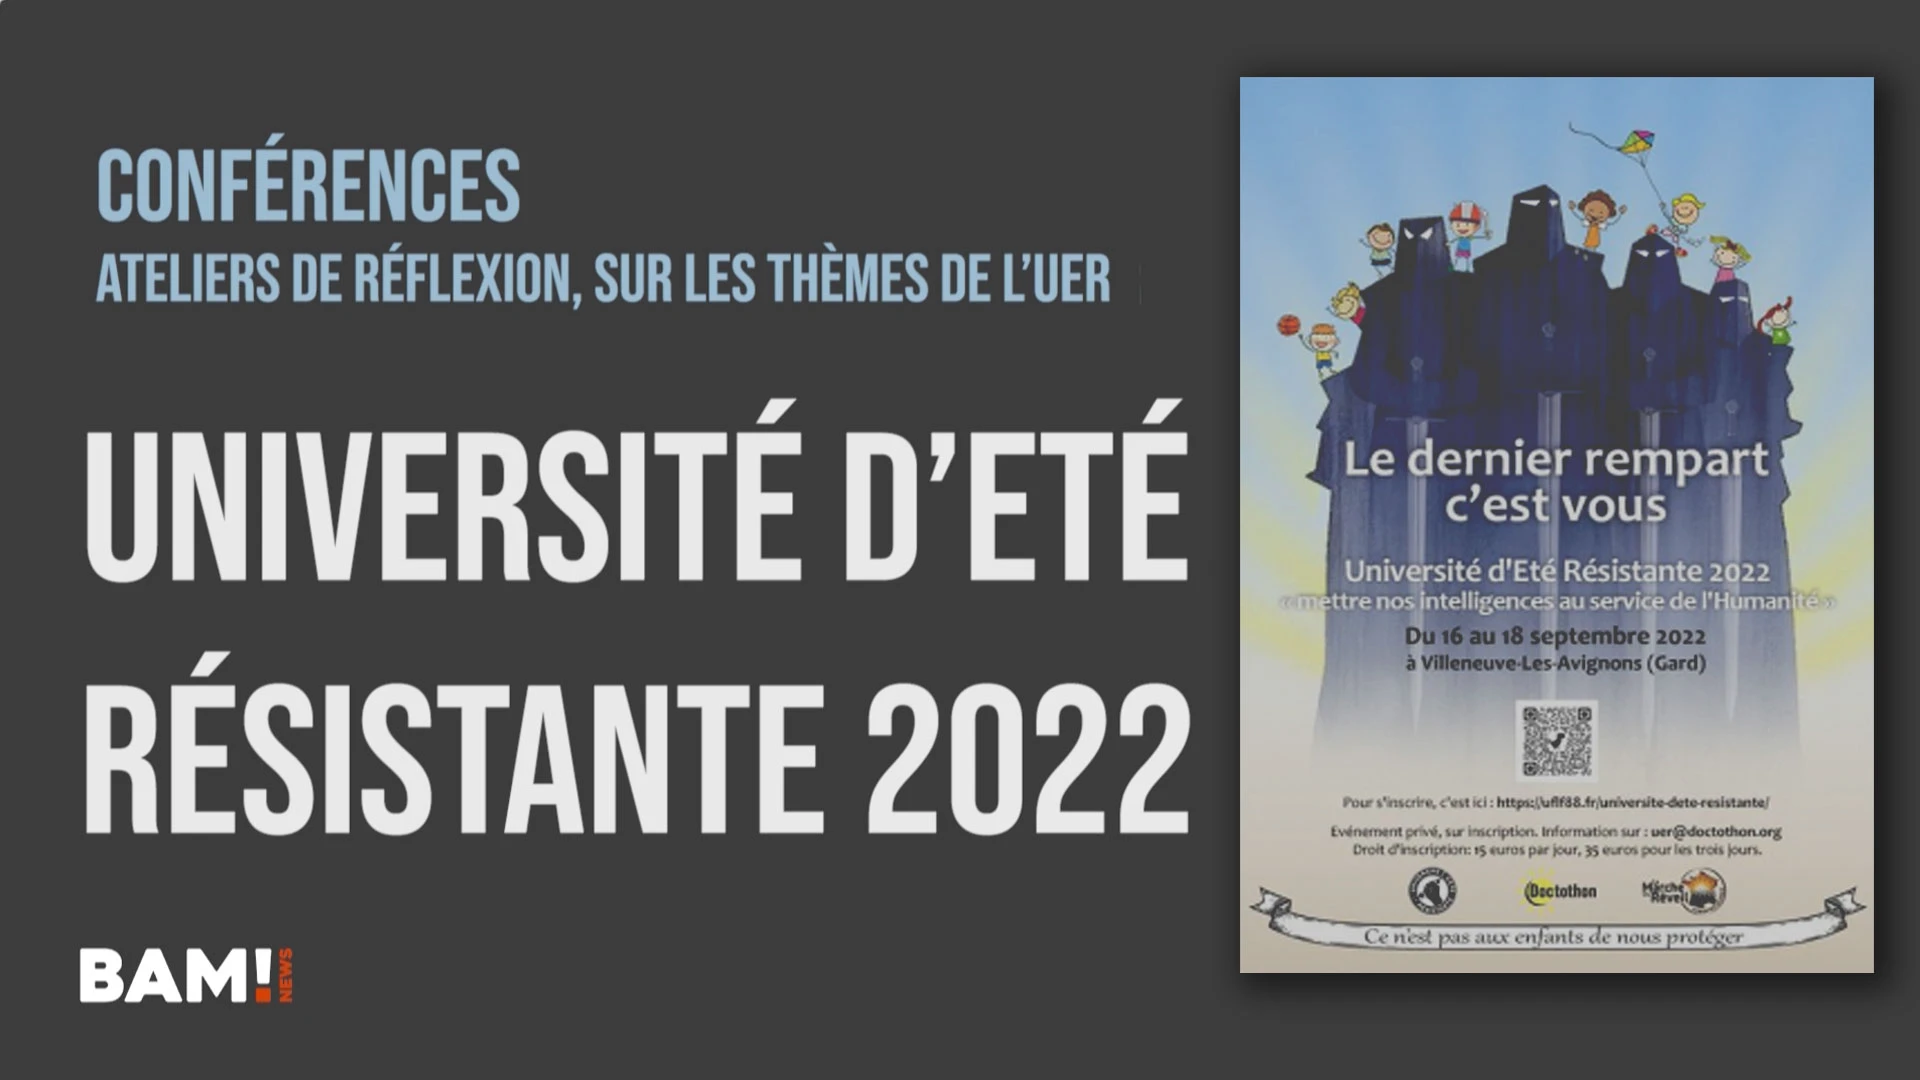 Université d’Eté Résistante 2022 (UER)